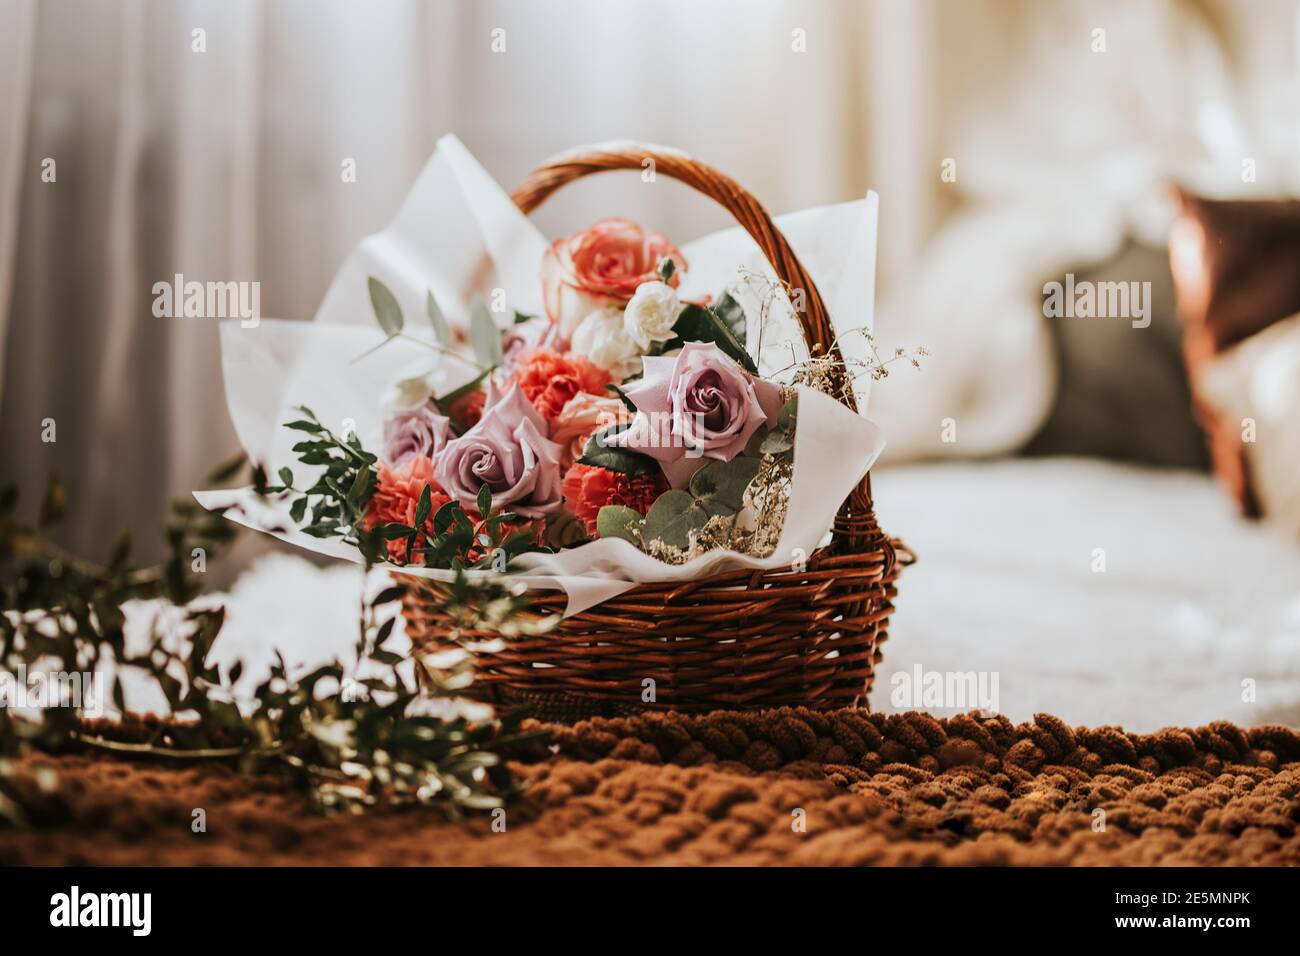 Ein großer Korb mit Blumen auf dem Bett. Valentinstag Geschenk Frau Tag,  Geschenk 8 märz Stockfotografie - Alamy